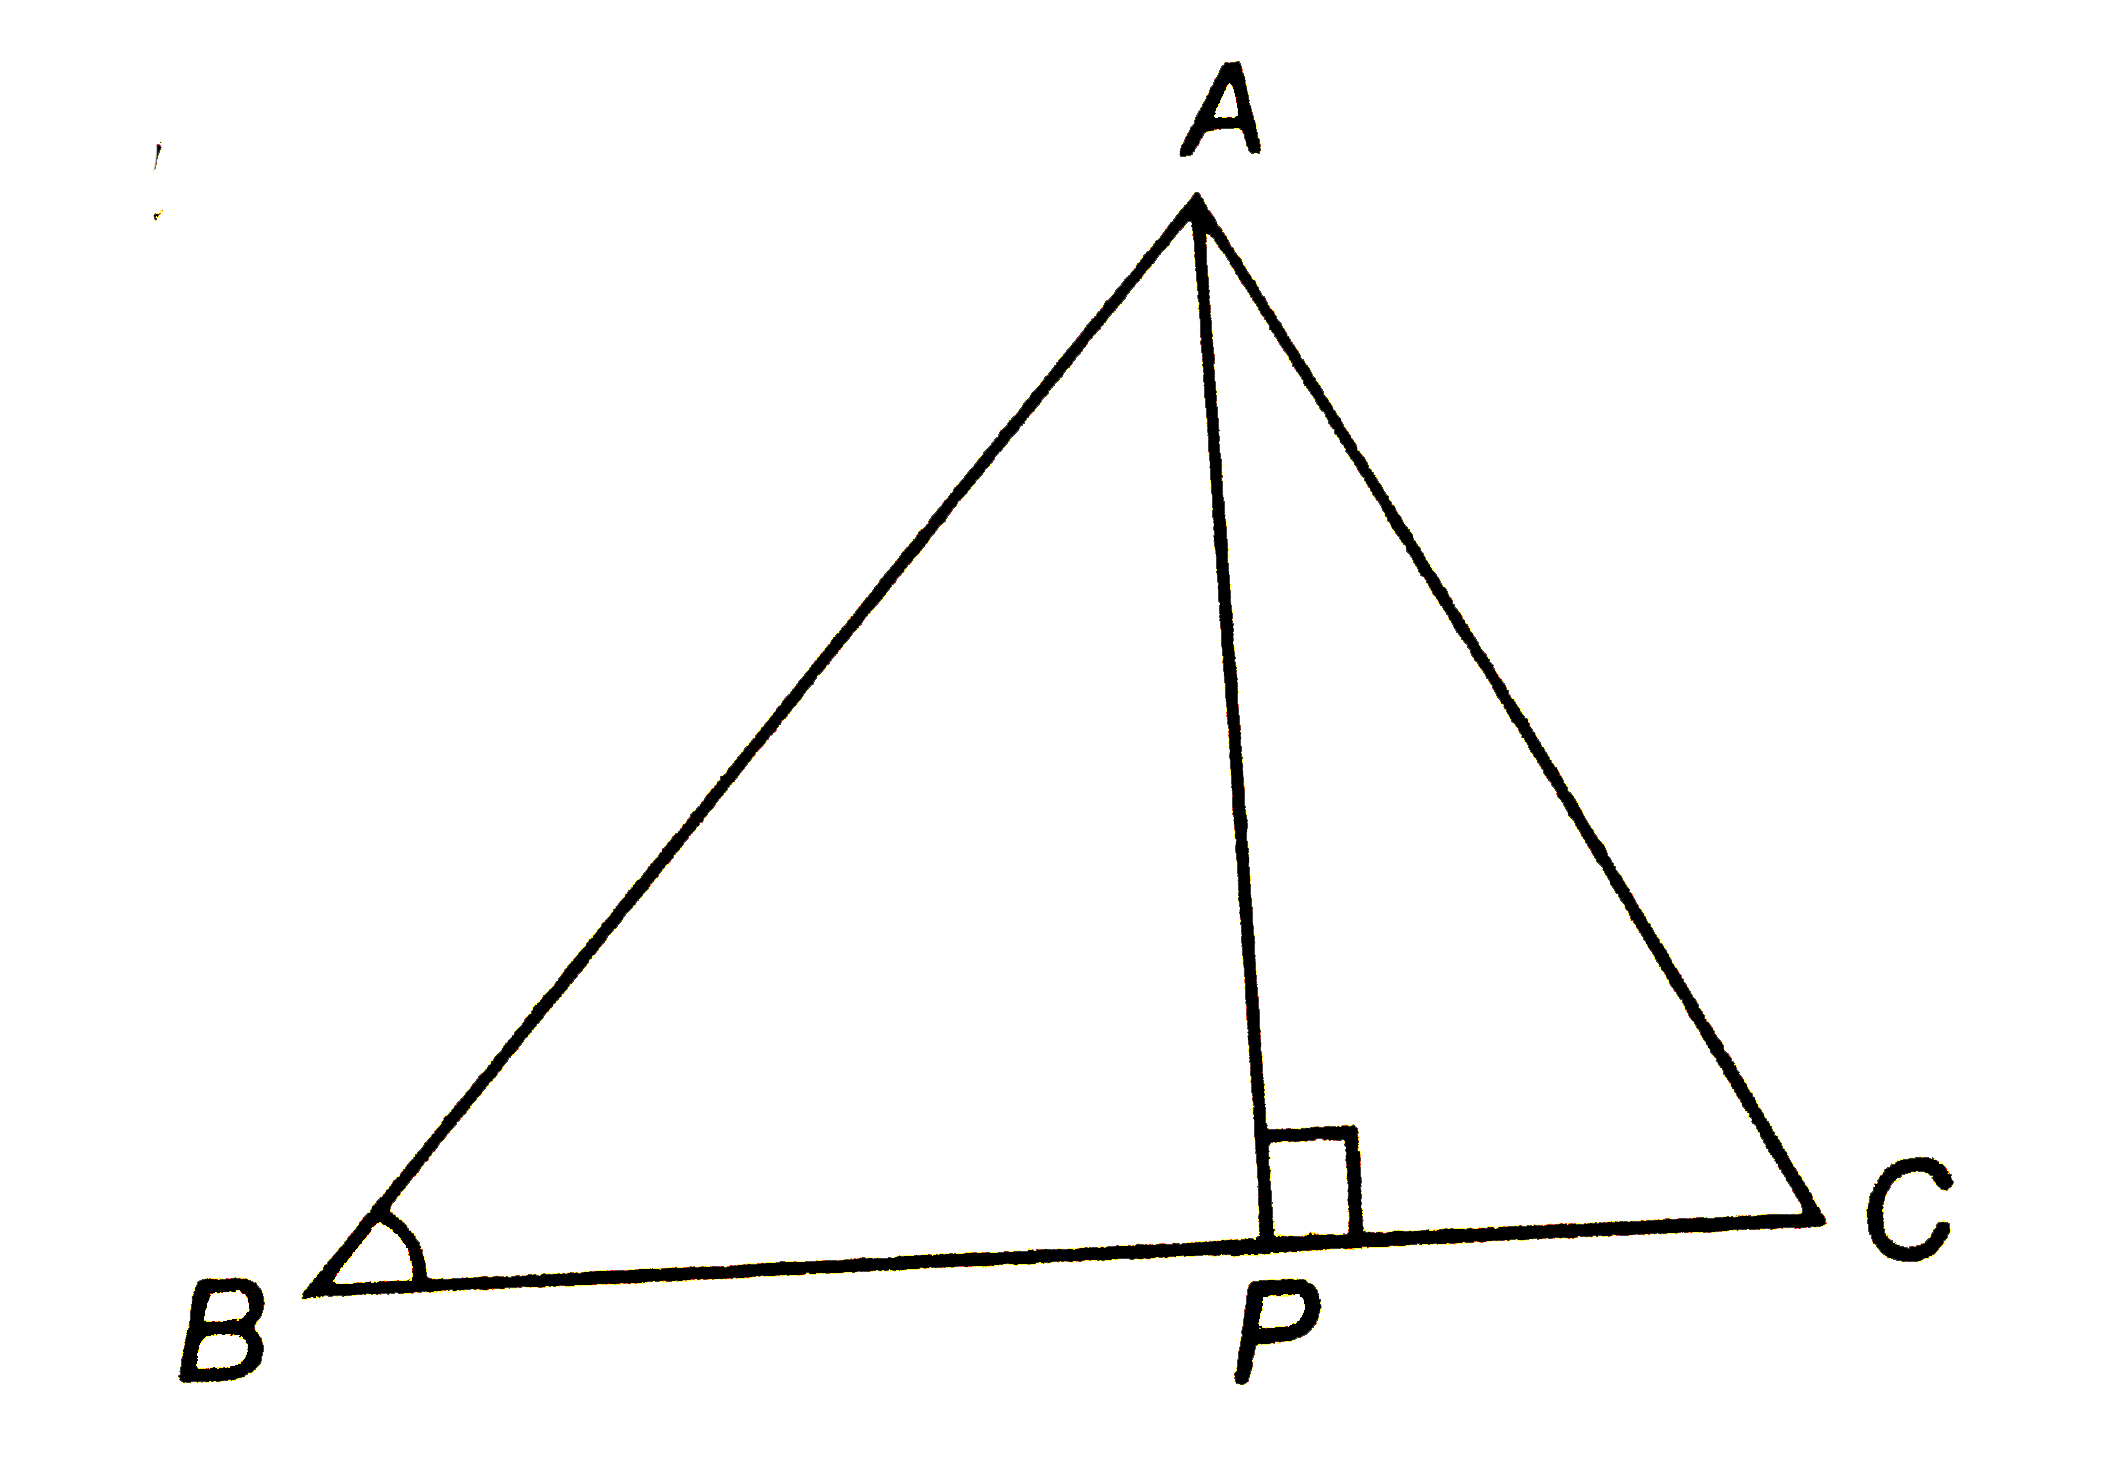 एक समबाहु त्रिभुज ABC कि भुजा 2a है उसके प्रत्येक शीर्षलम्ब कि लमबी ज्ञात कीजिये